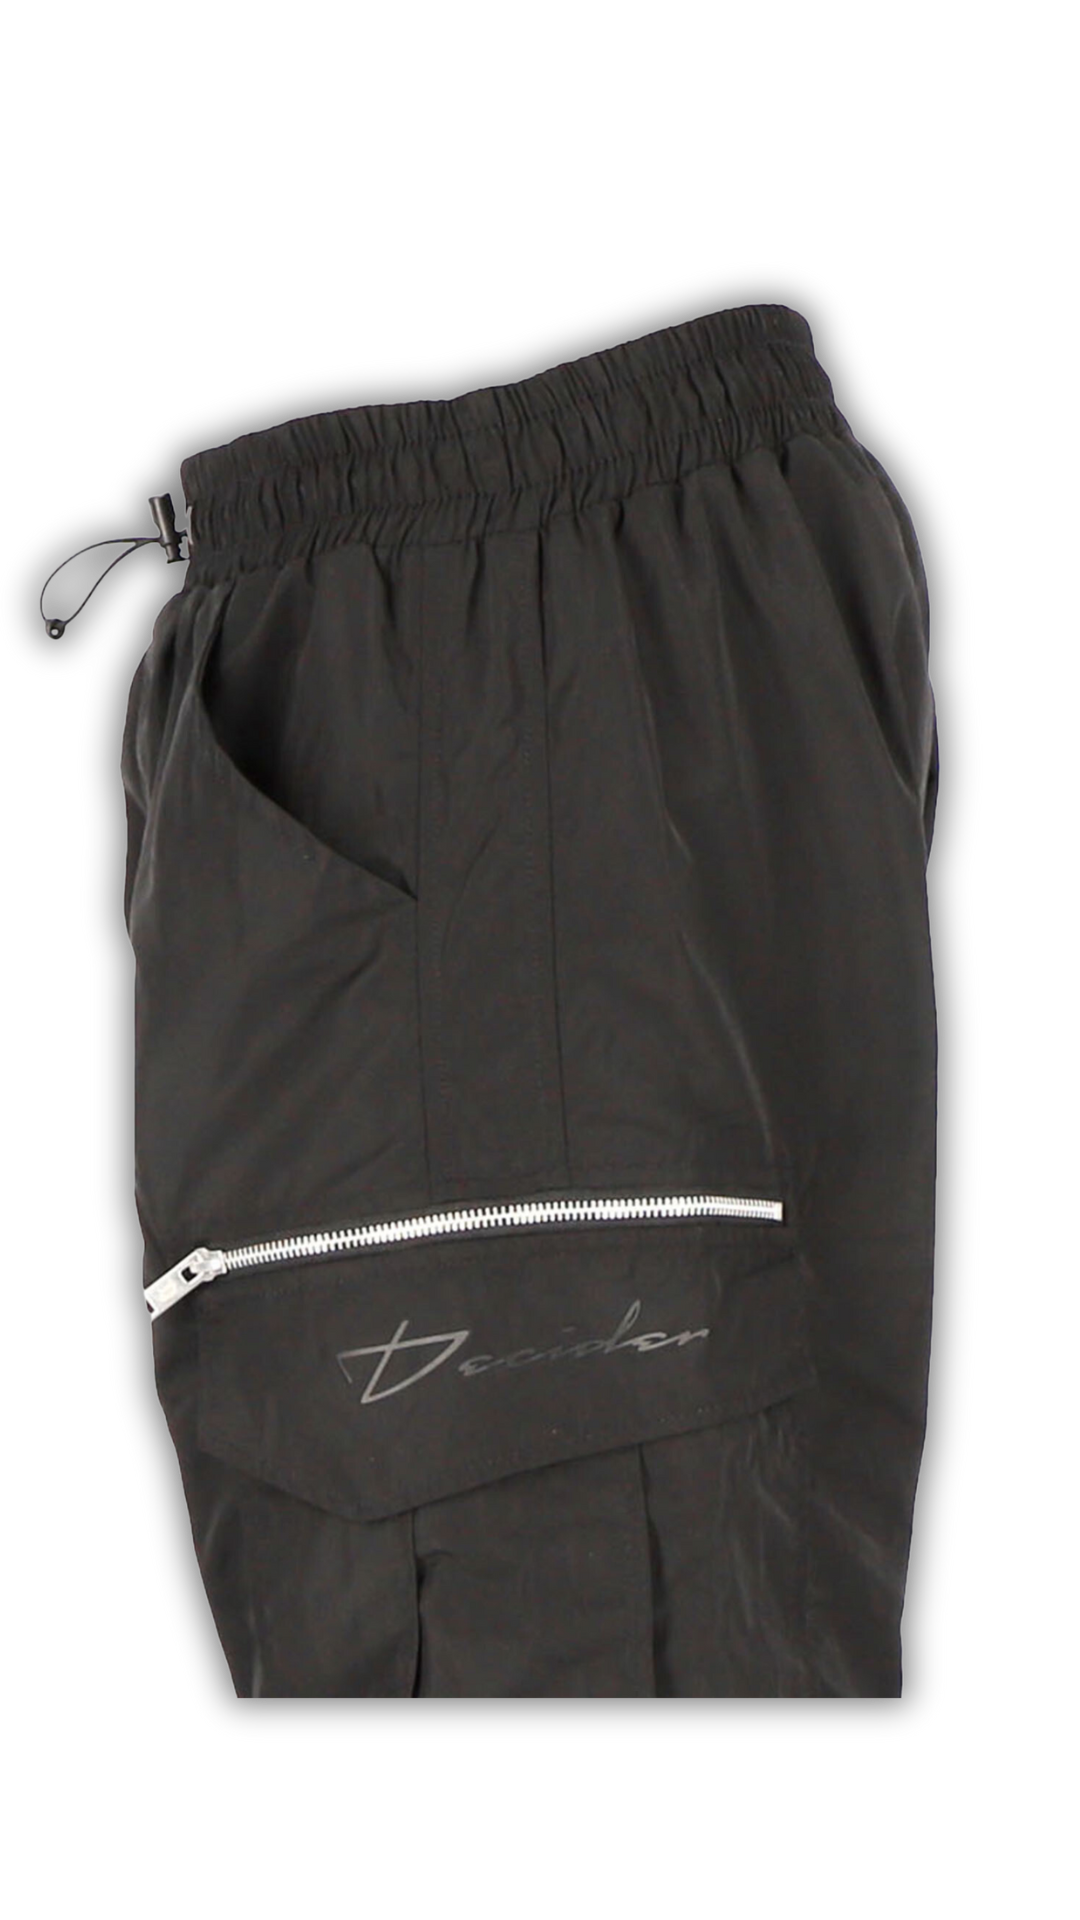 Seitliche Detailansicht der Decider Trackpants mit Tone in Tone Logo in schwarz, Taschen und Reißverschluss